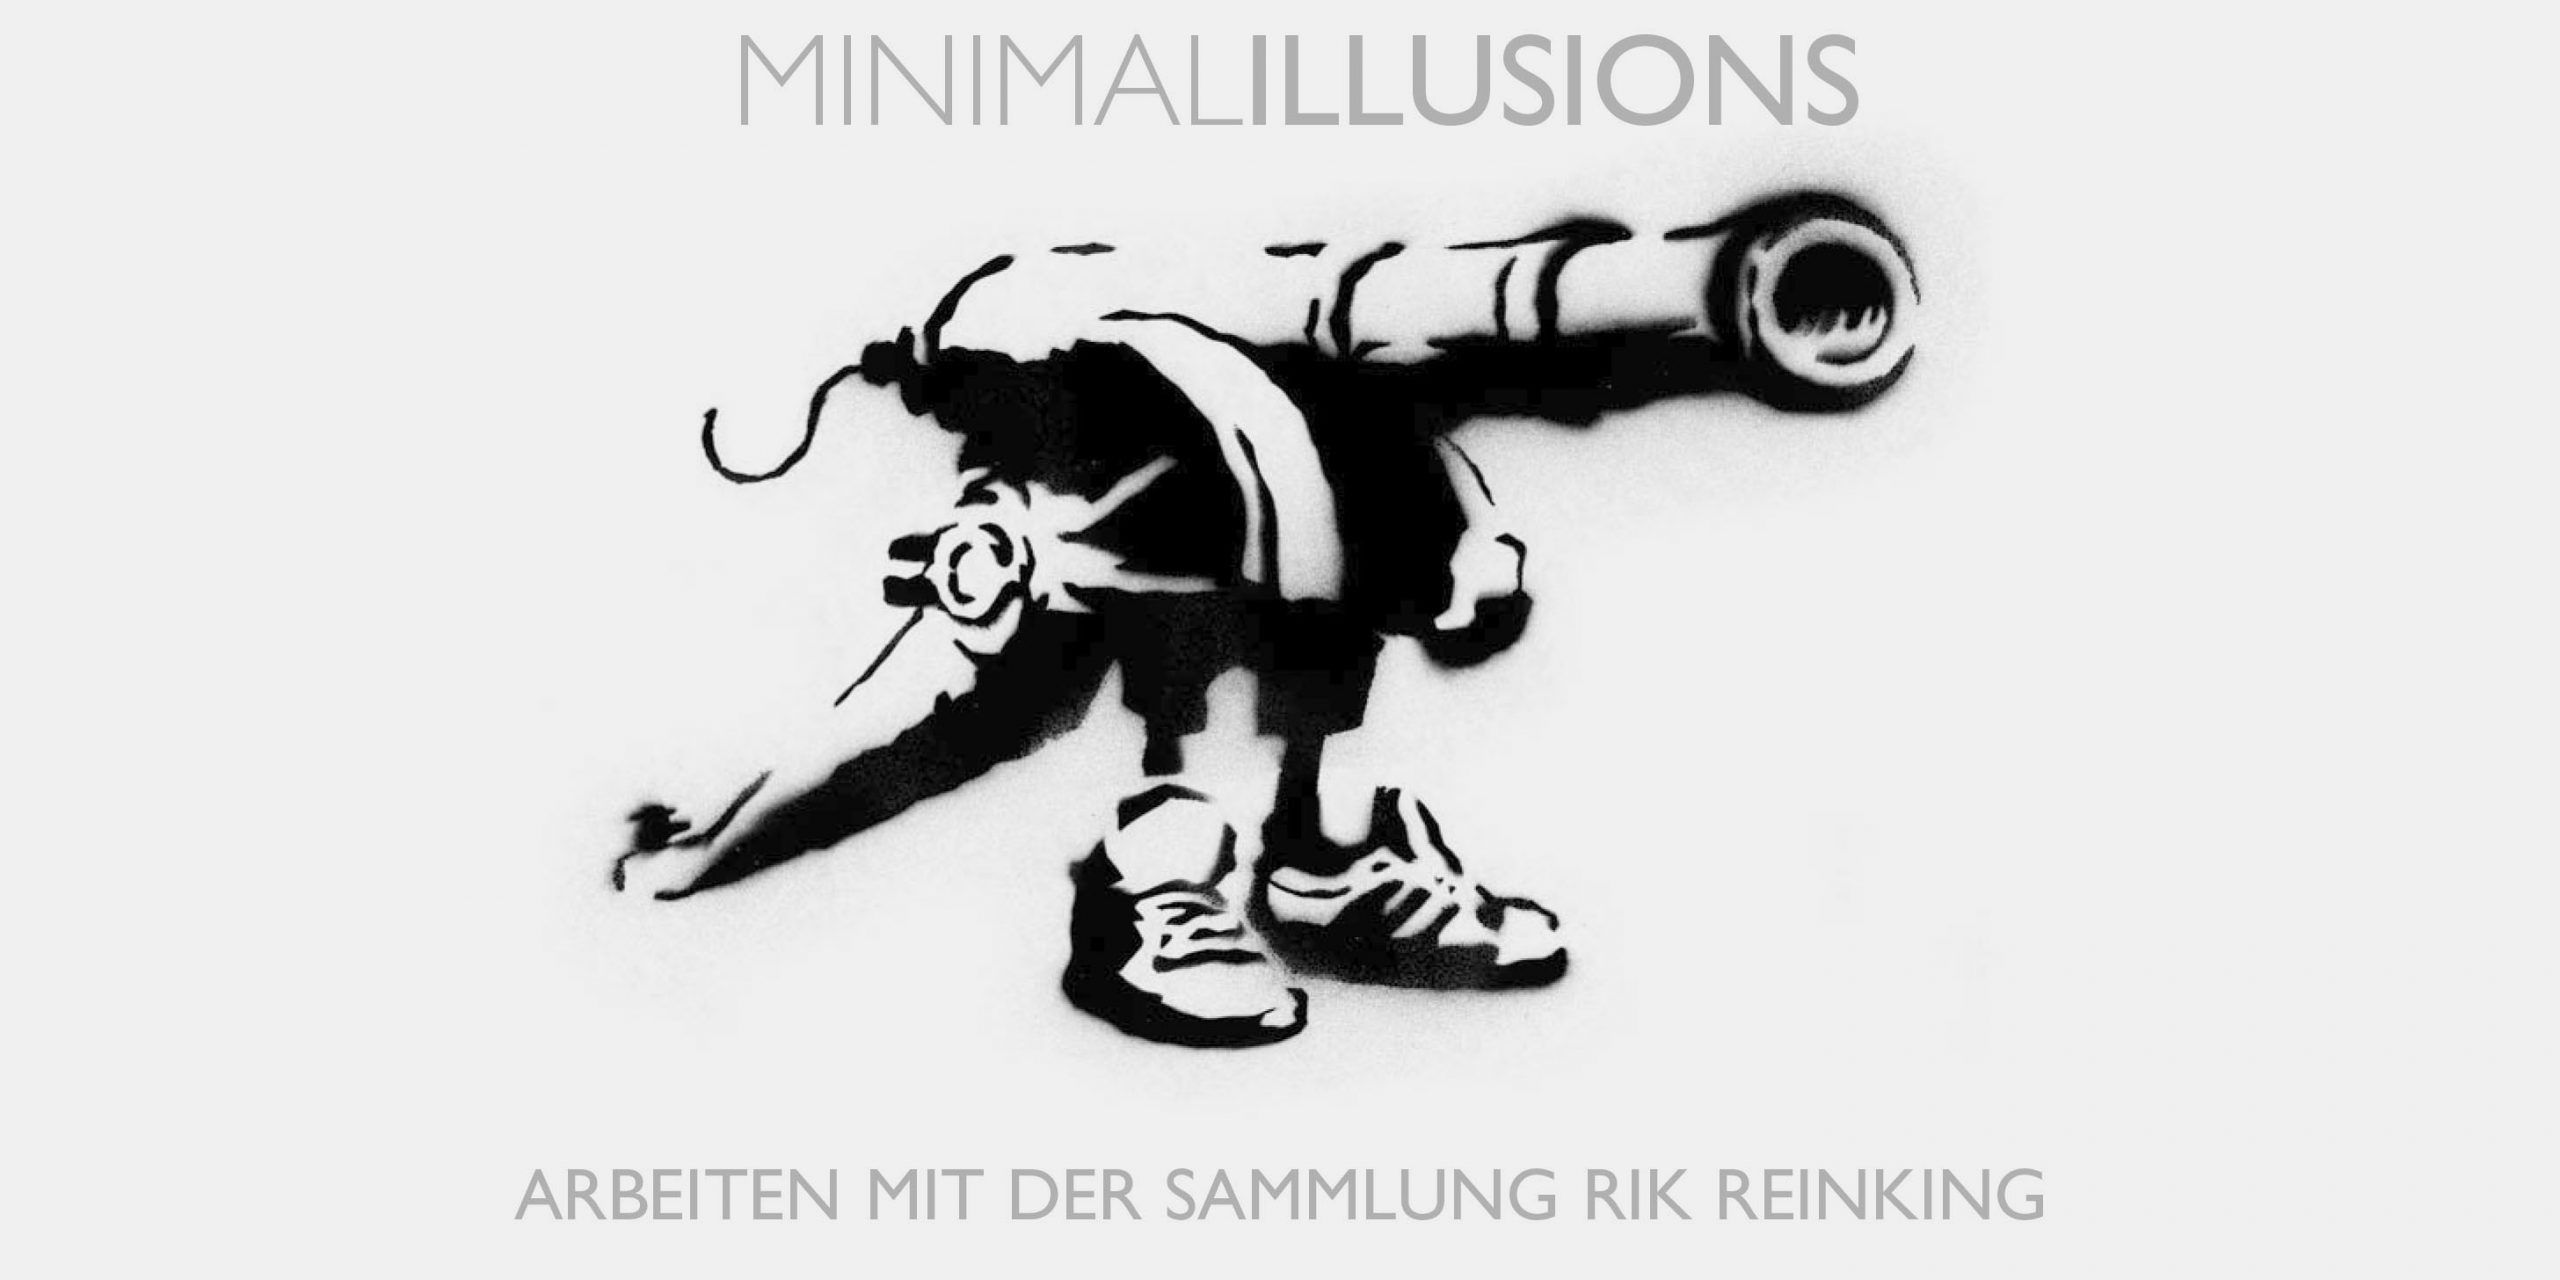 "Minimal Illusions - Arbeiten mit der Sammlung Rik Reinking", Villa Merkel und Bahnwärterhaus, Galerien der Stadt Esslingen am Neckar, Pulverwiesen 25, 73726 Esslingen am Neckar. 19.02.2006 - 17.04.2006 (Faltblatt)